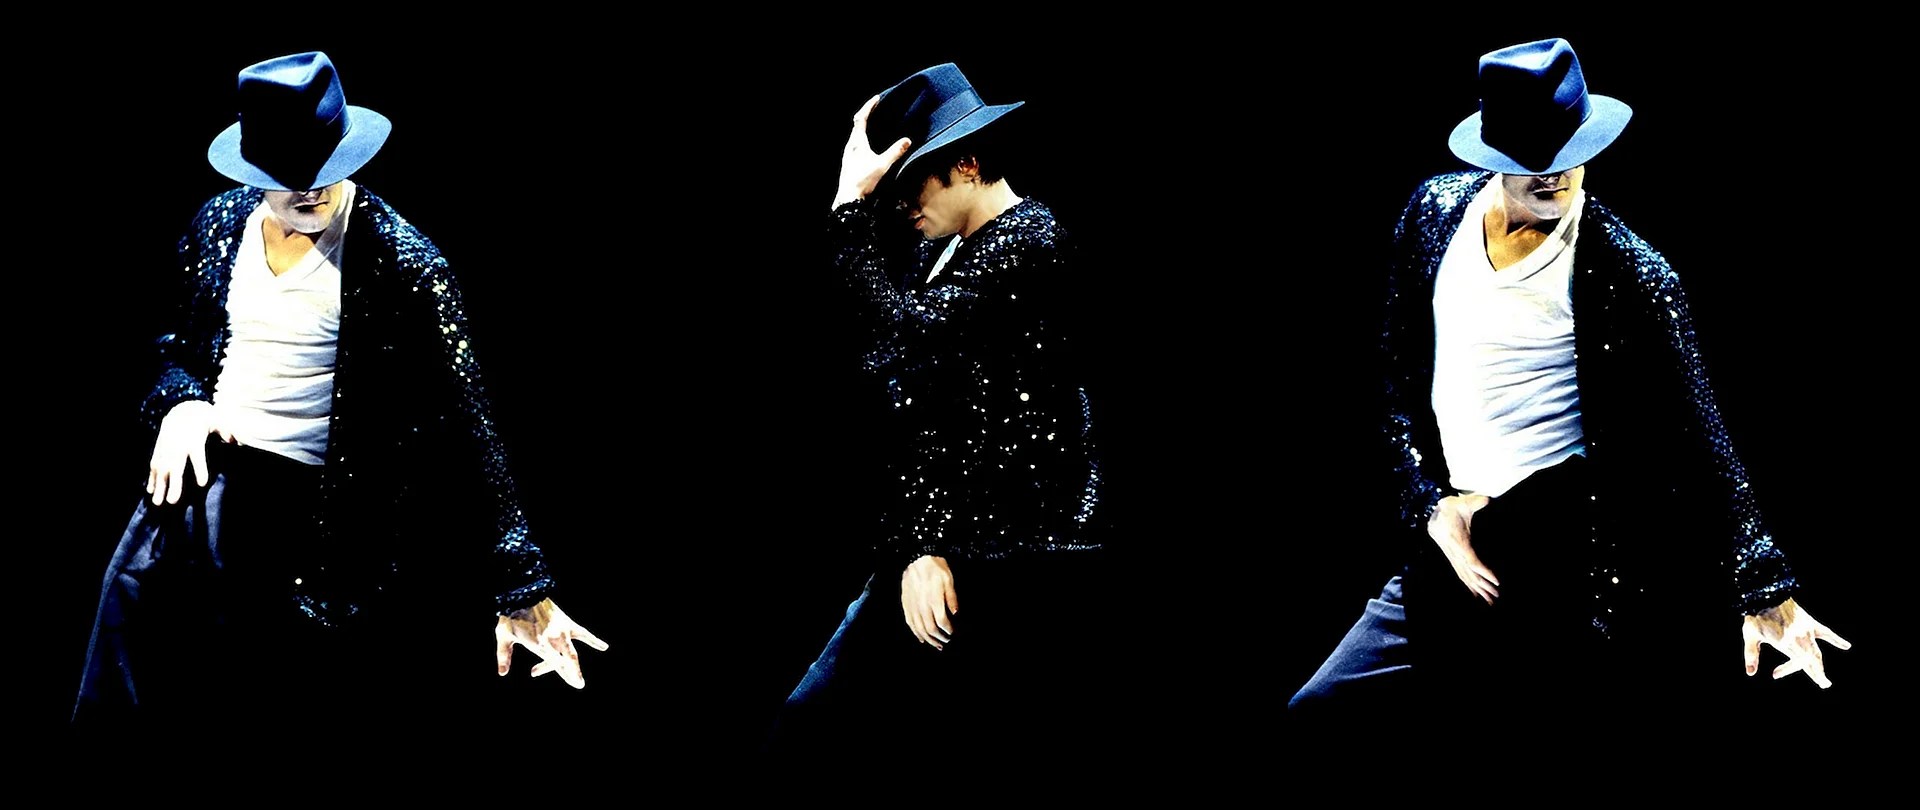 Holograma Michael Jackson Wallpaper